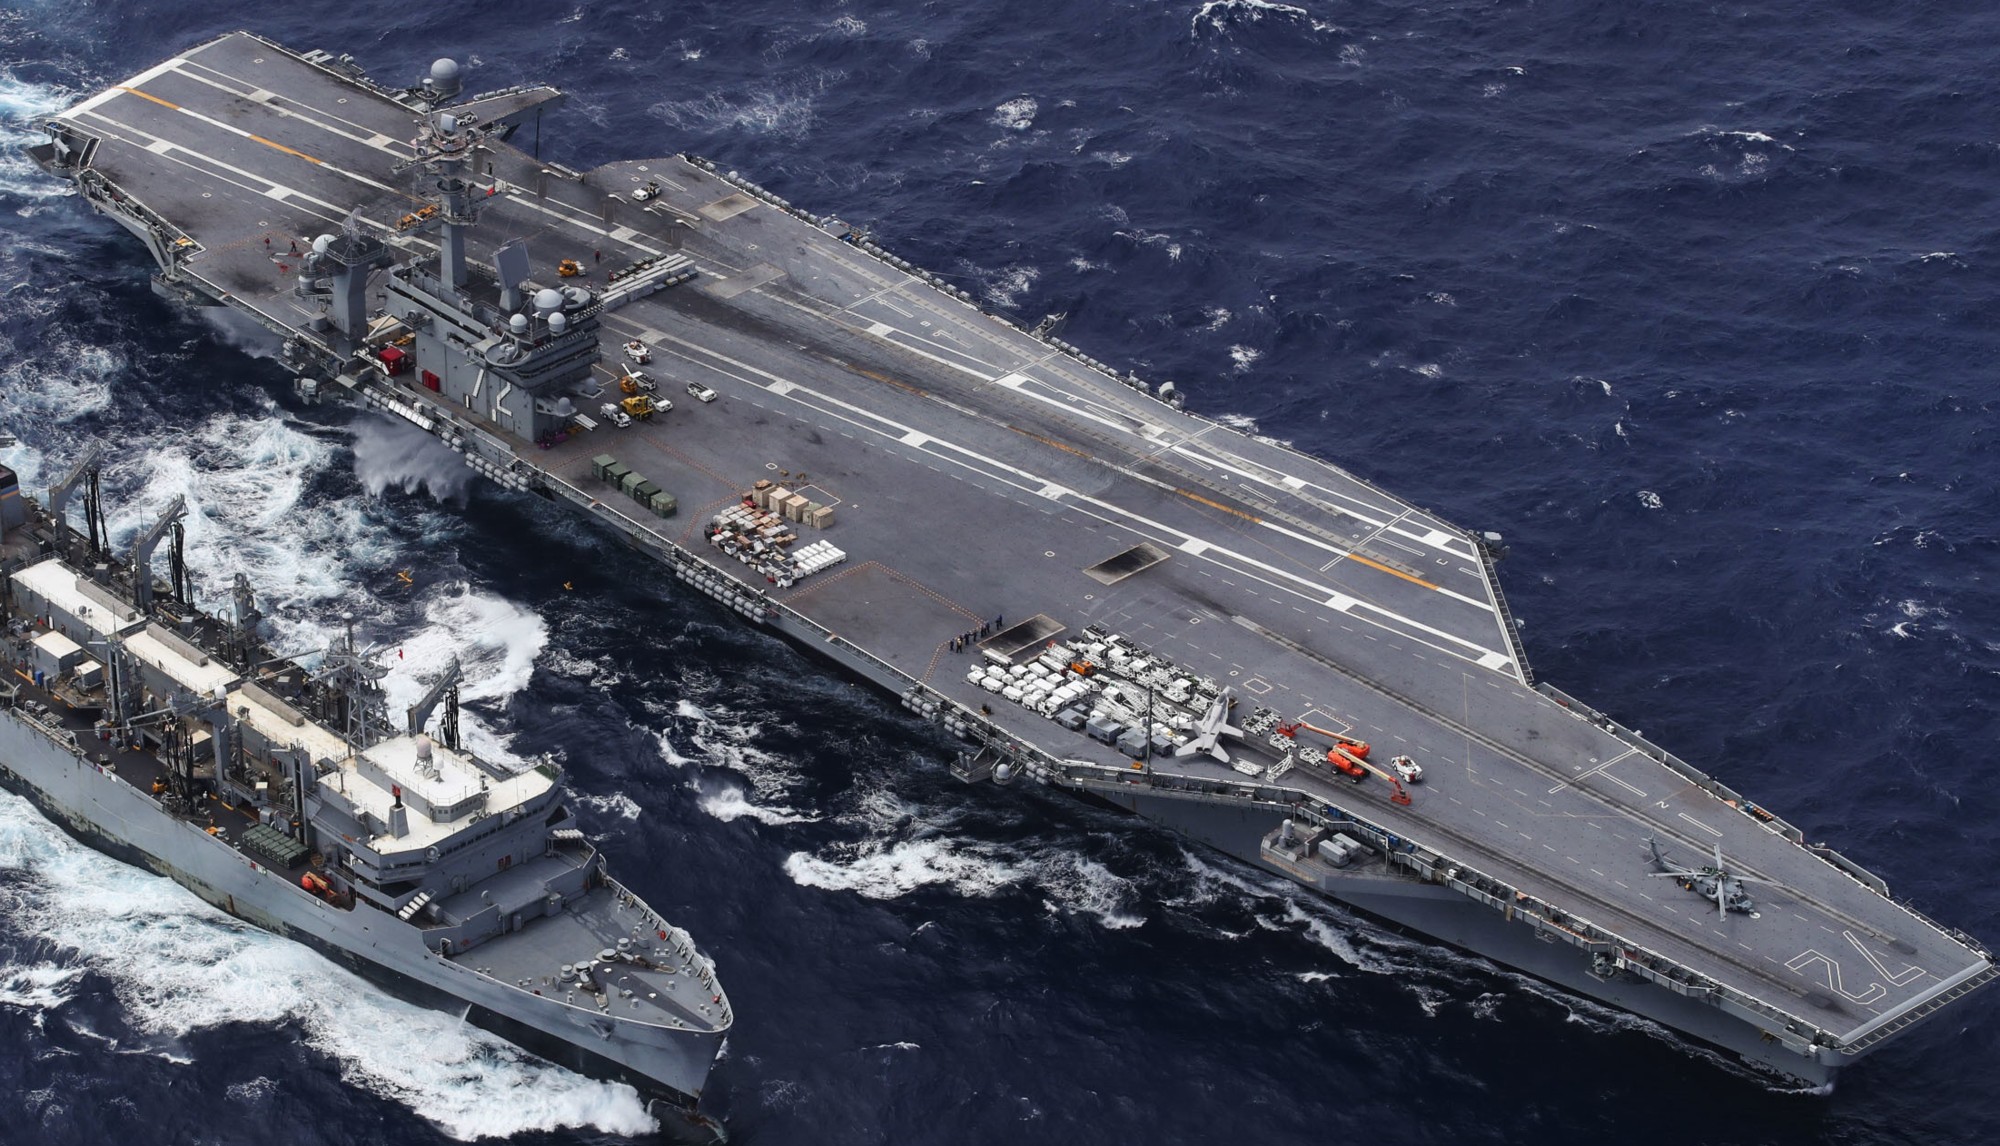 cvn-72 uss abraham lincoln nimitz class aircraft carrier us navy 58 ammunition onload